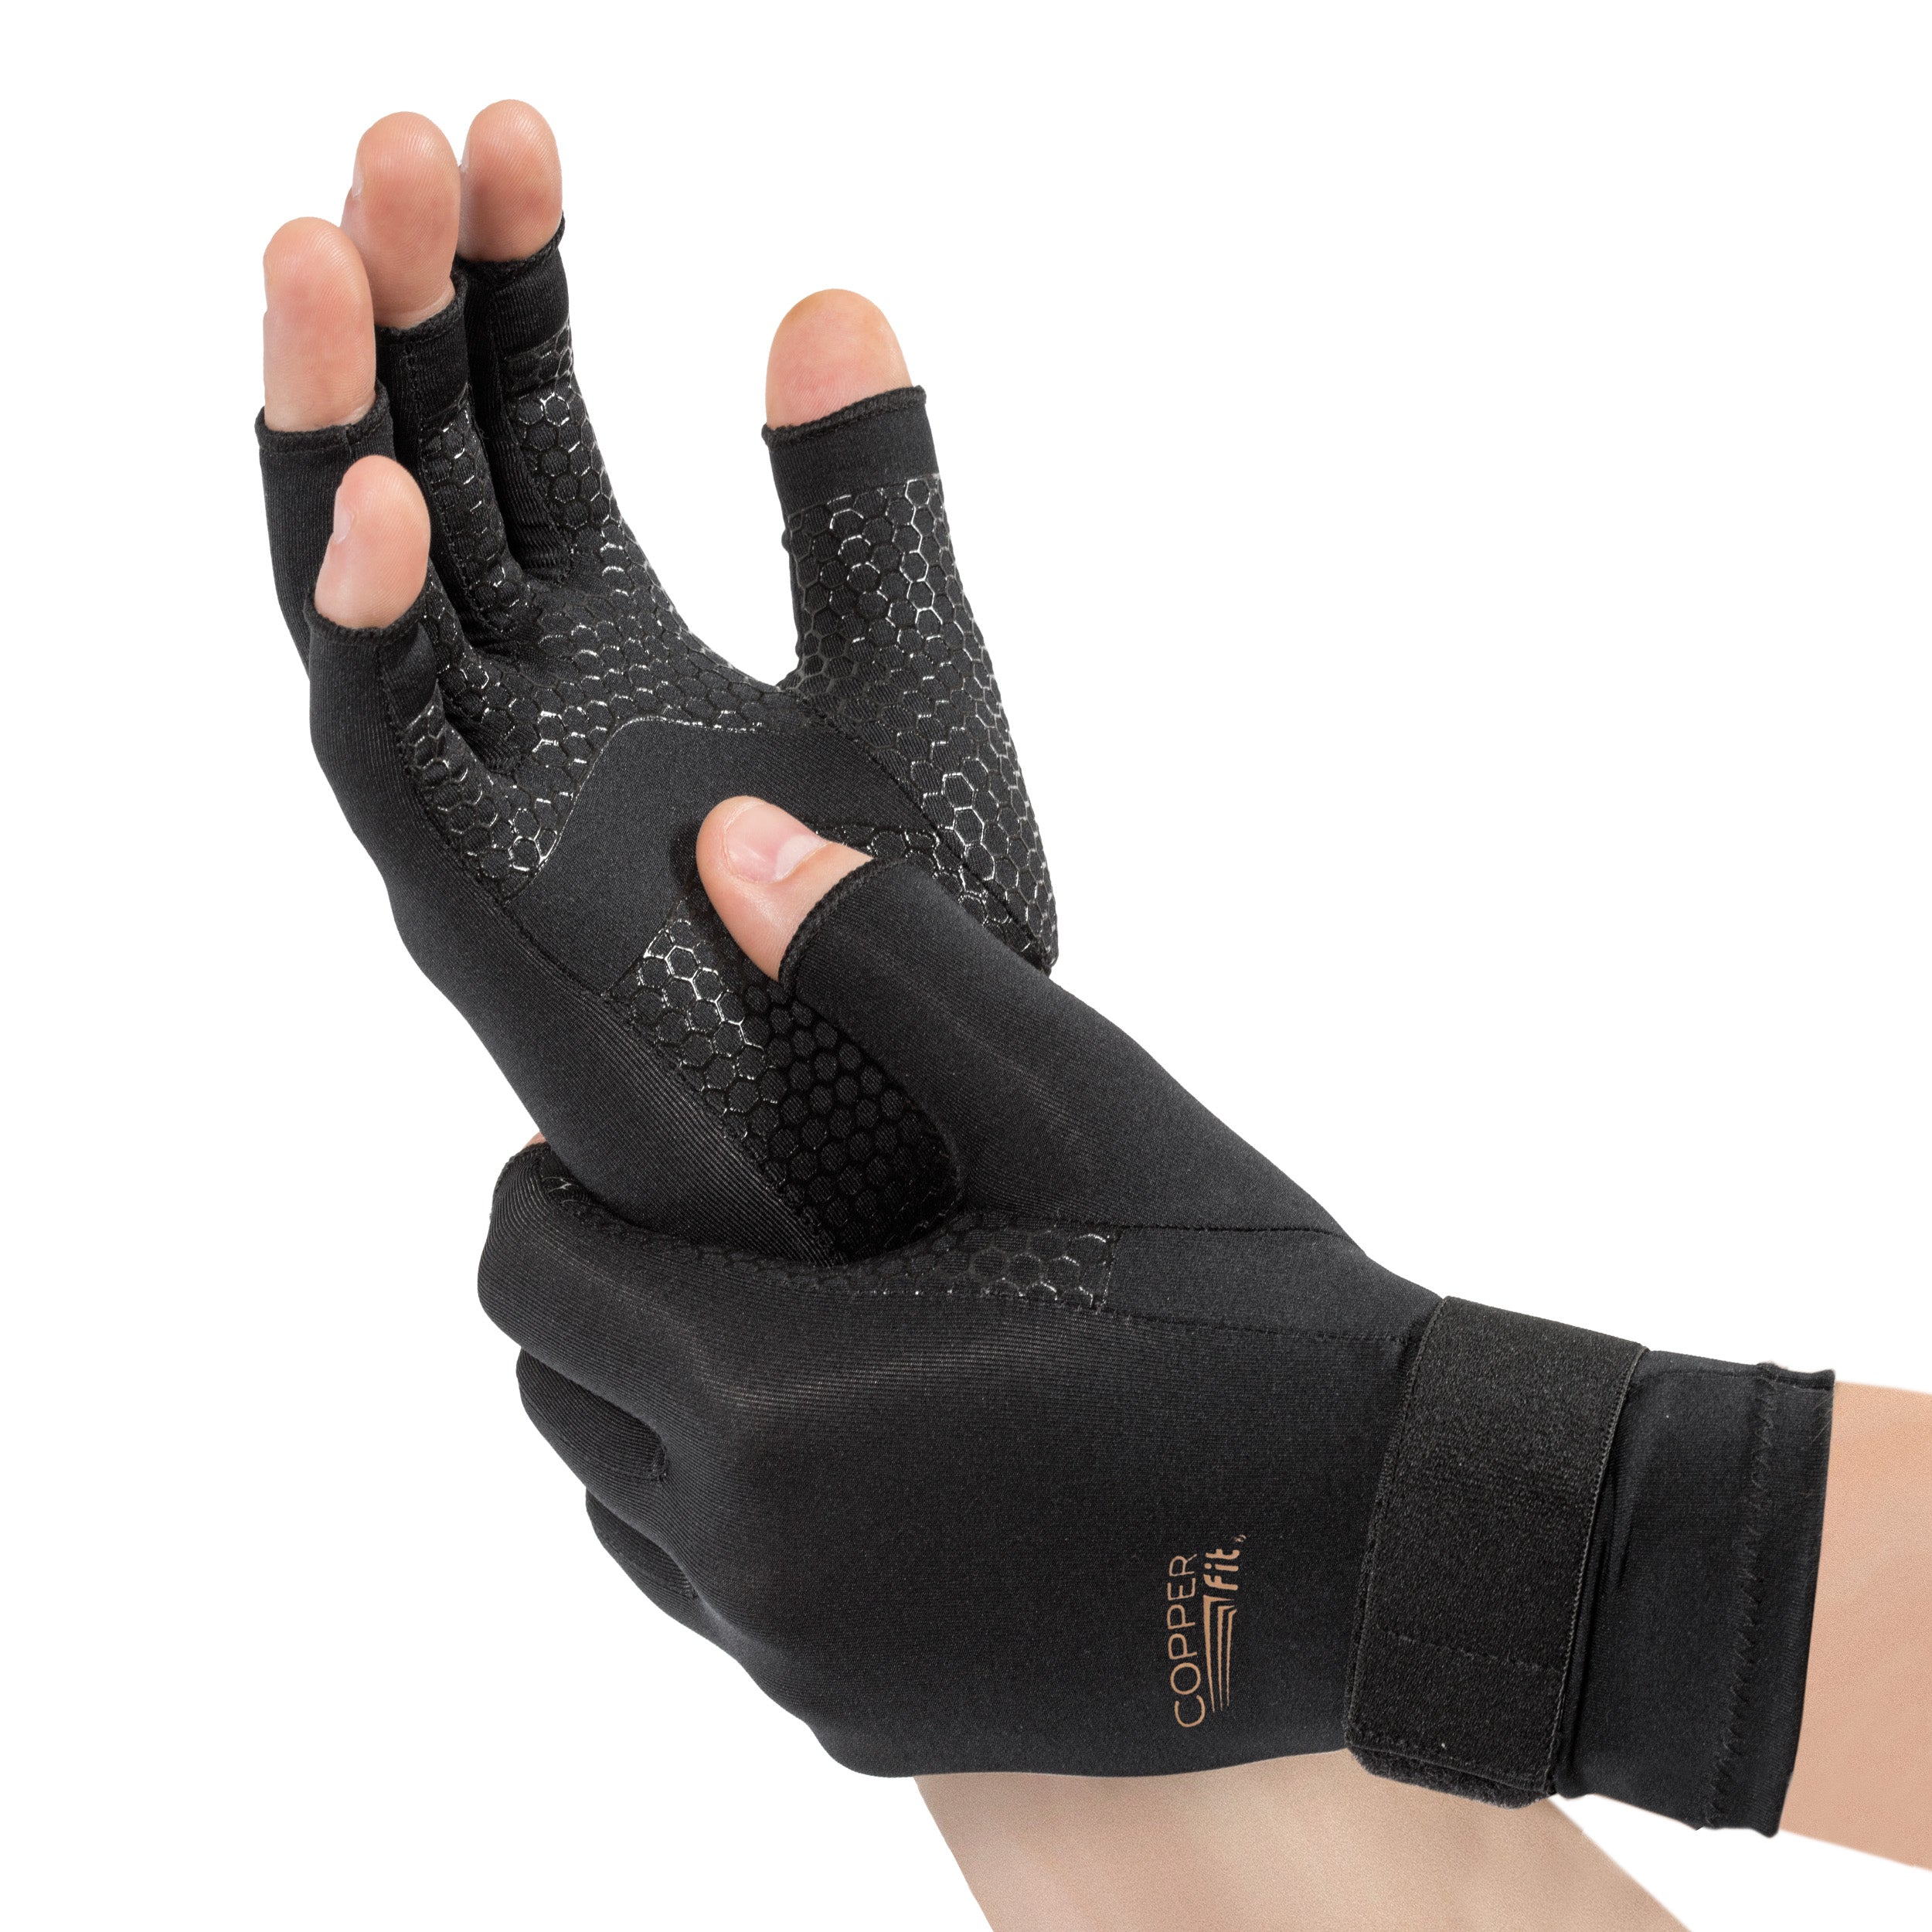 Copper Joe Fingerless Arthritis Gloves 